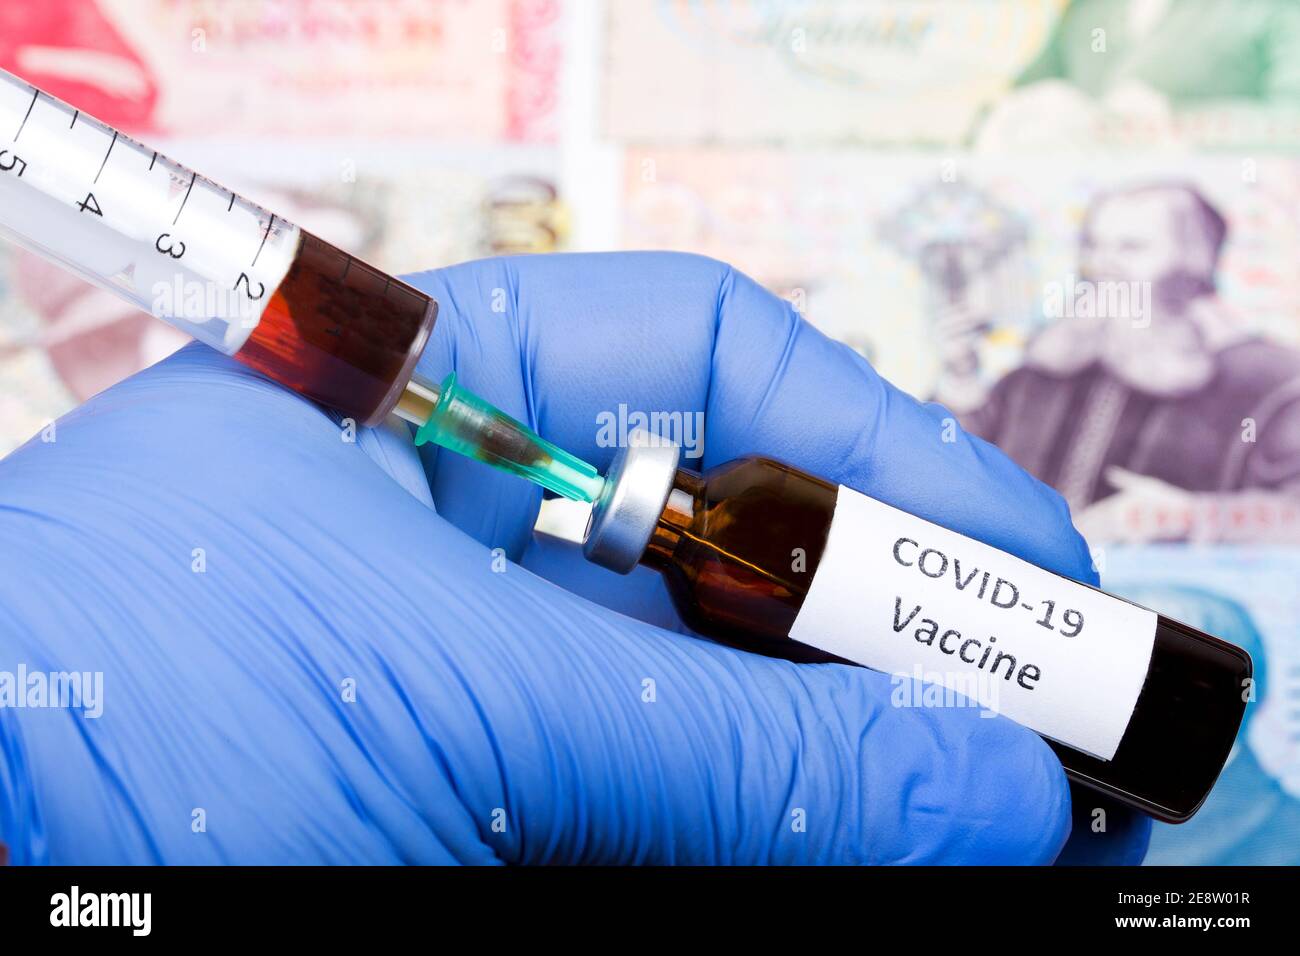 Vaccin contre Covid-19 sur fond de couronne islandaise Banque D'Images